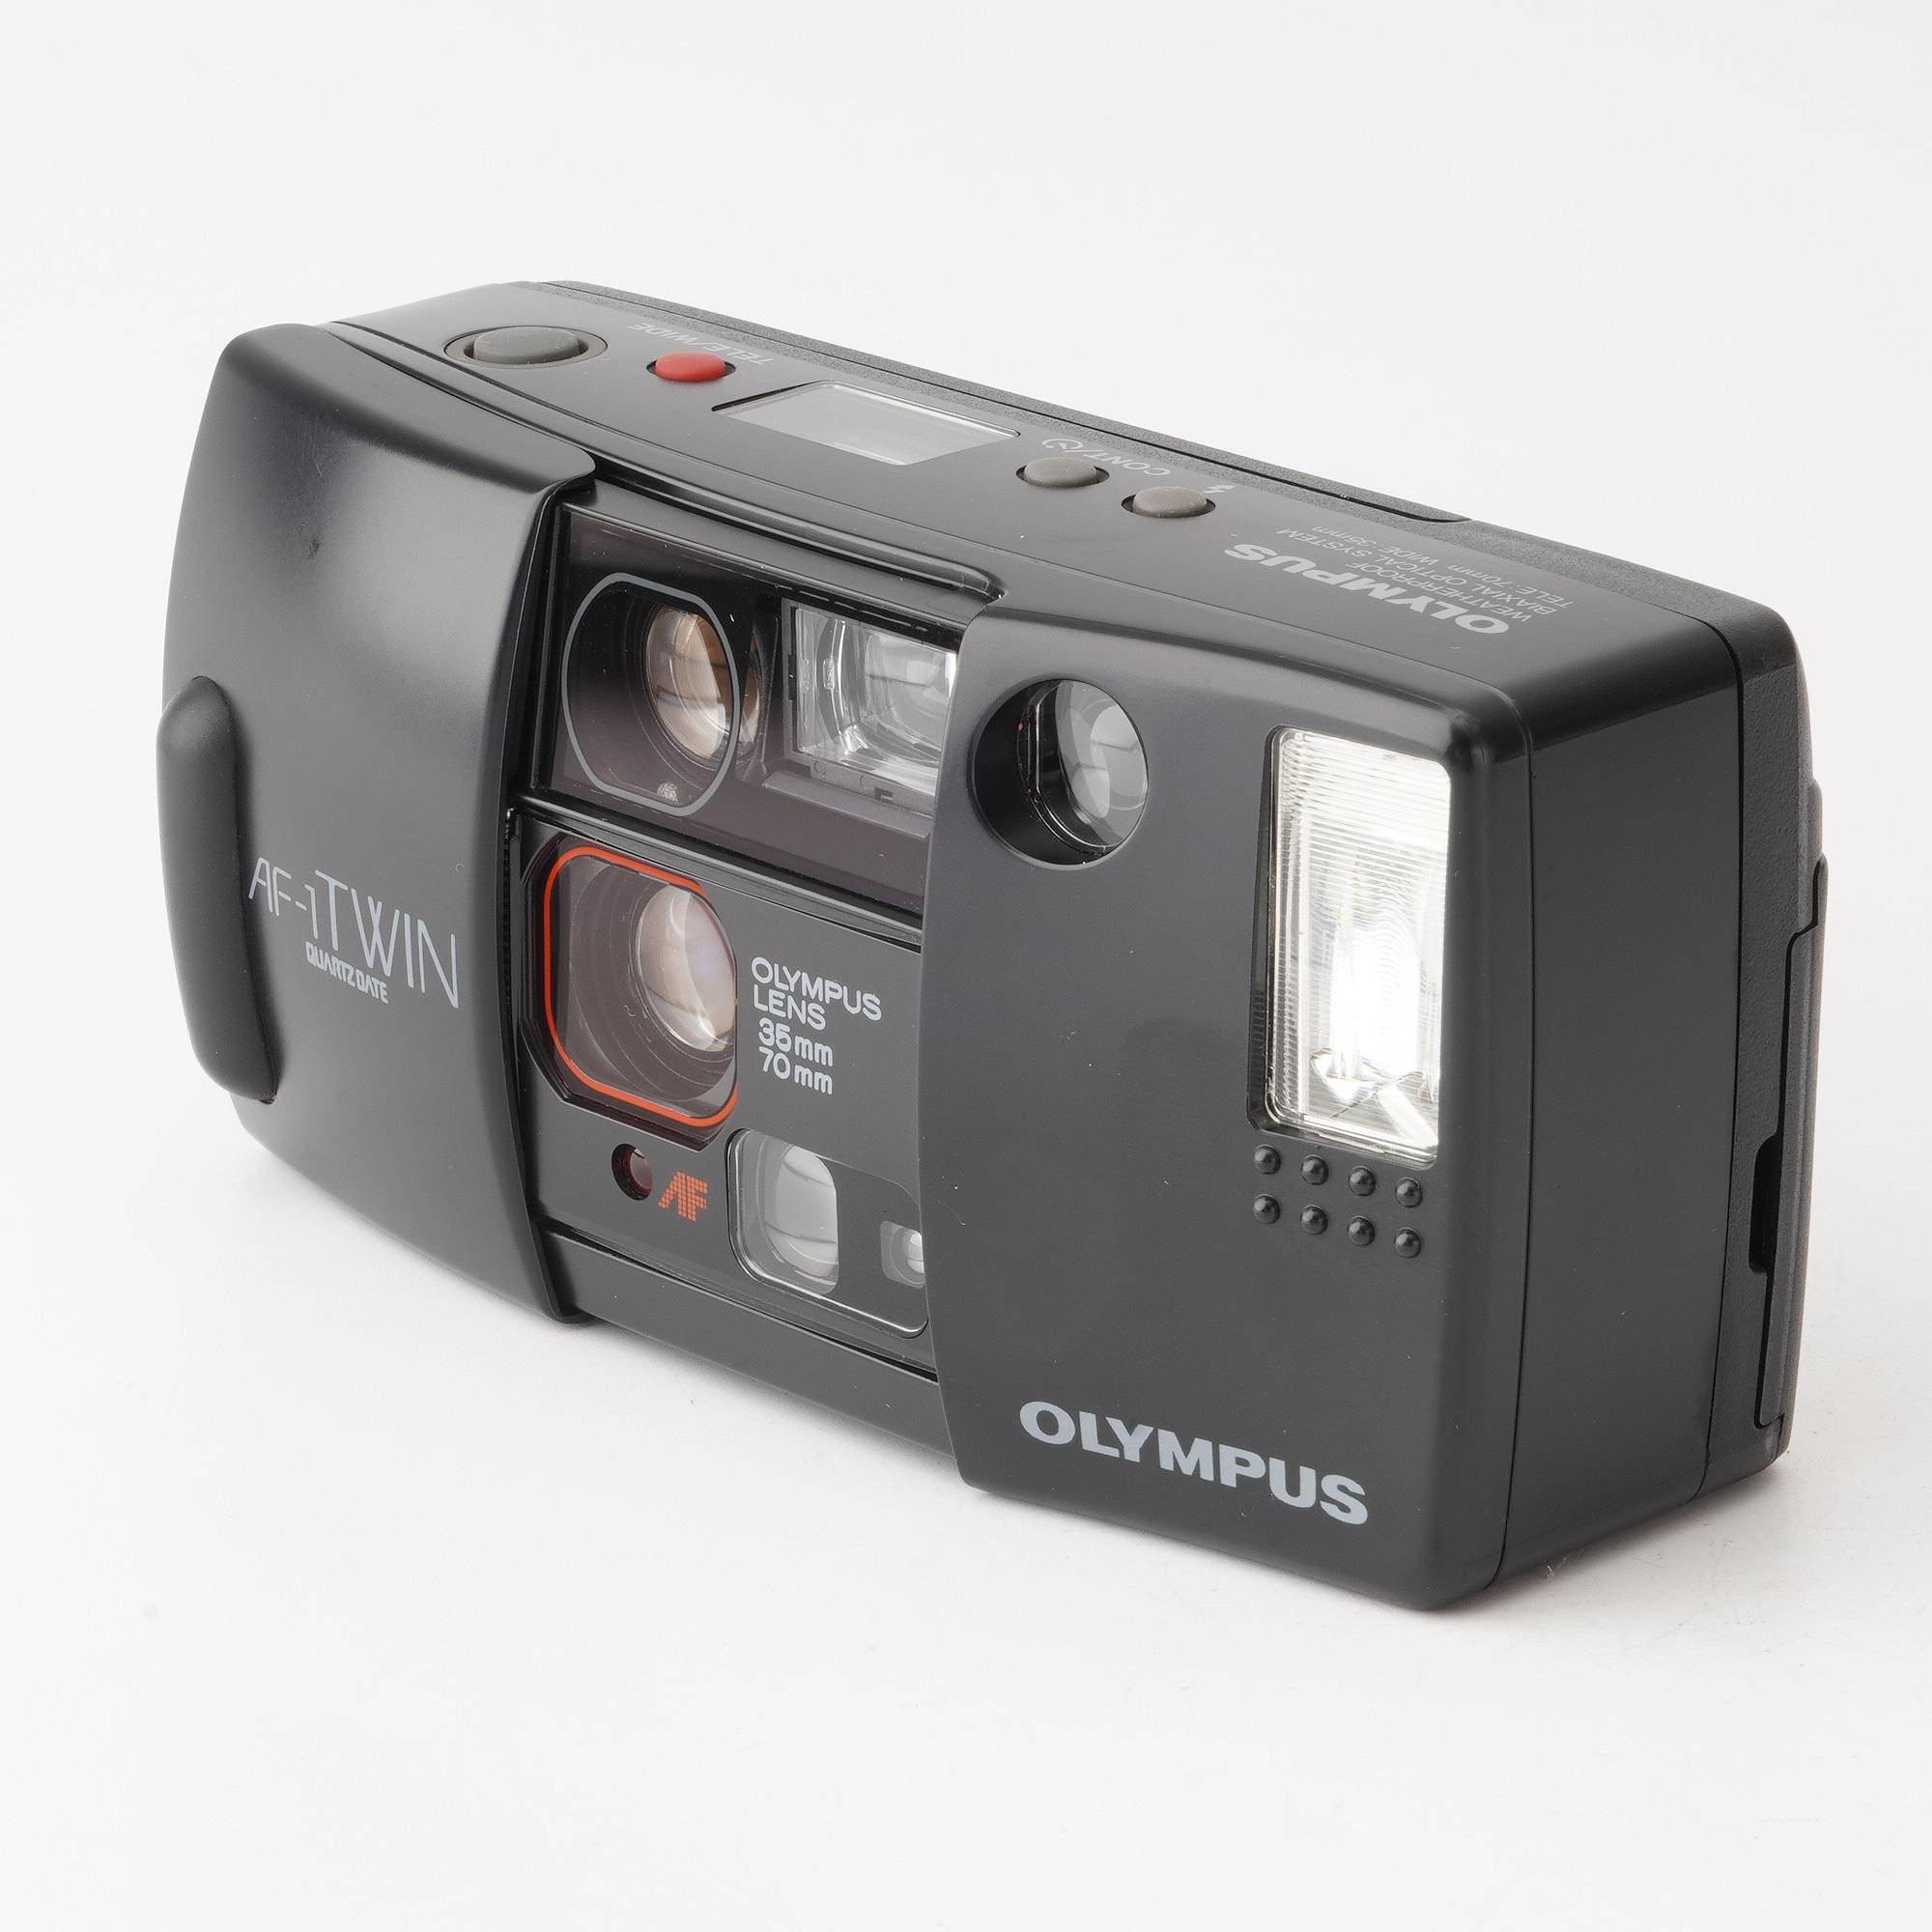 OLYMPUSフィルムカメラ AF-1 TWIN QUARTZ DATE ③ - フィルムカメラ